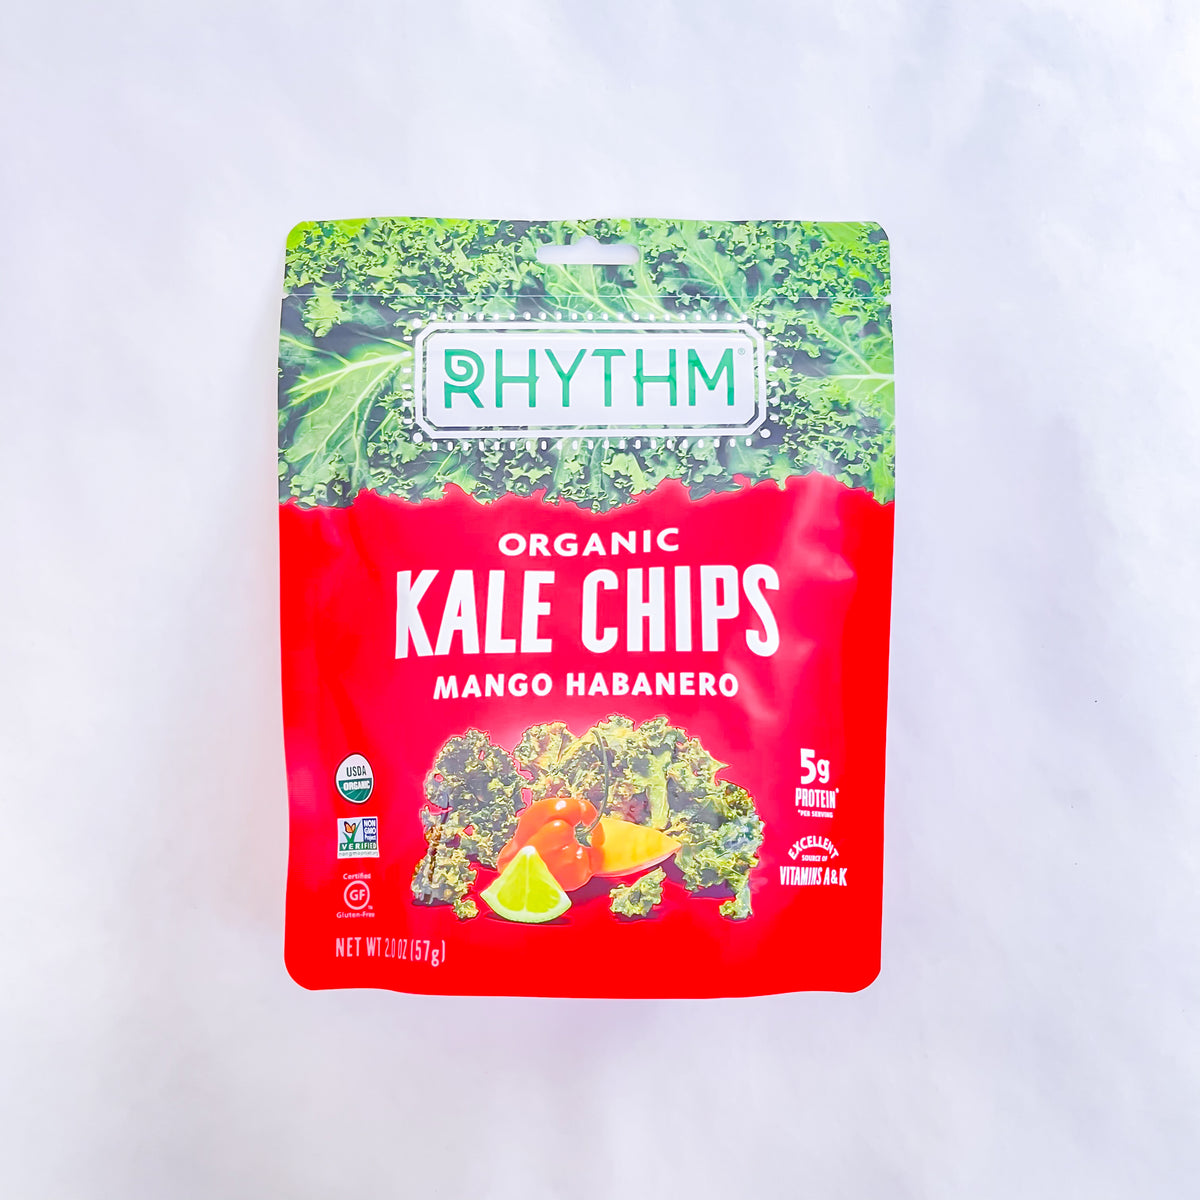 Rhythm Kale Chips Mango Habañero